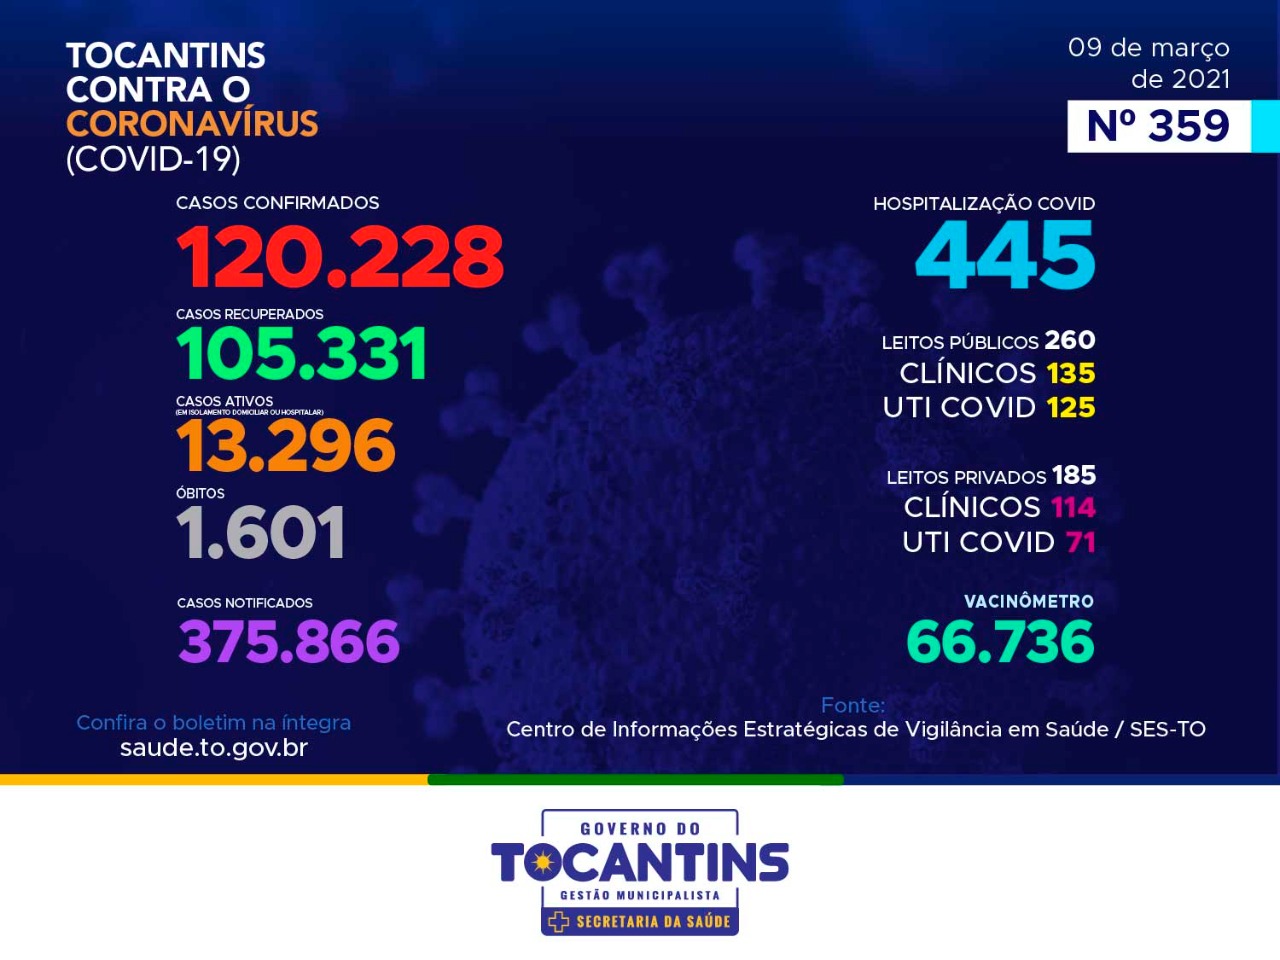 Coronavírus: com 940 novos casos hoje, Tocantins ultrapassa as 120 mil confirmações